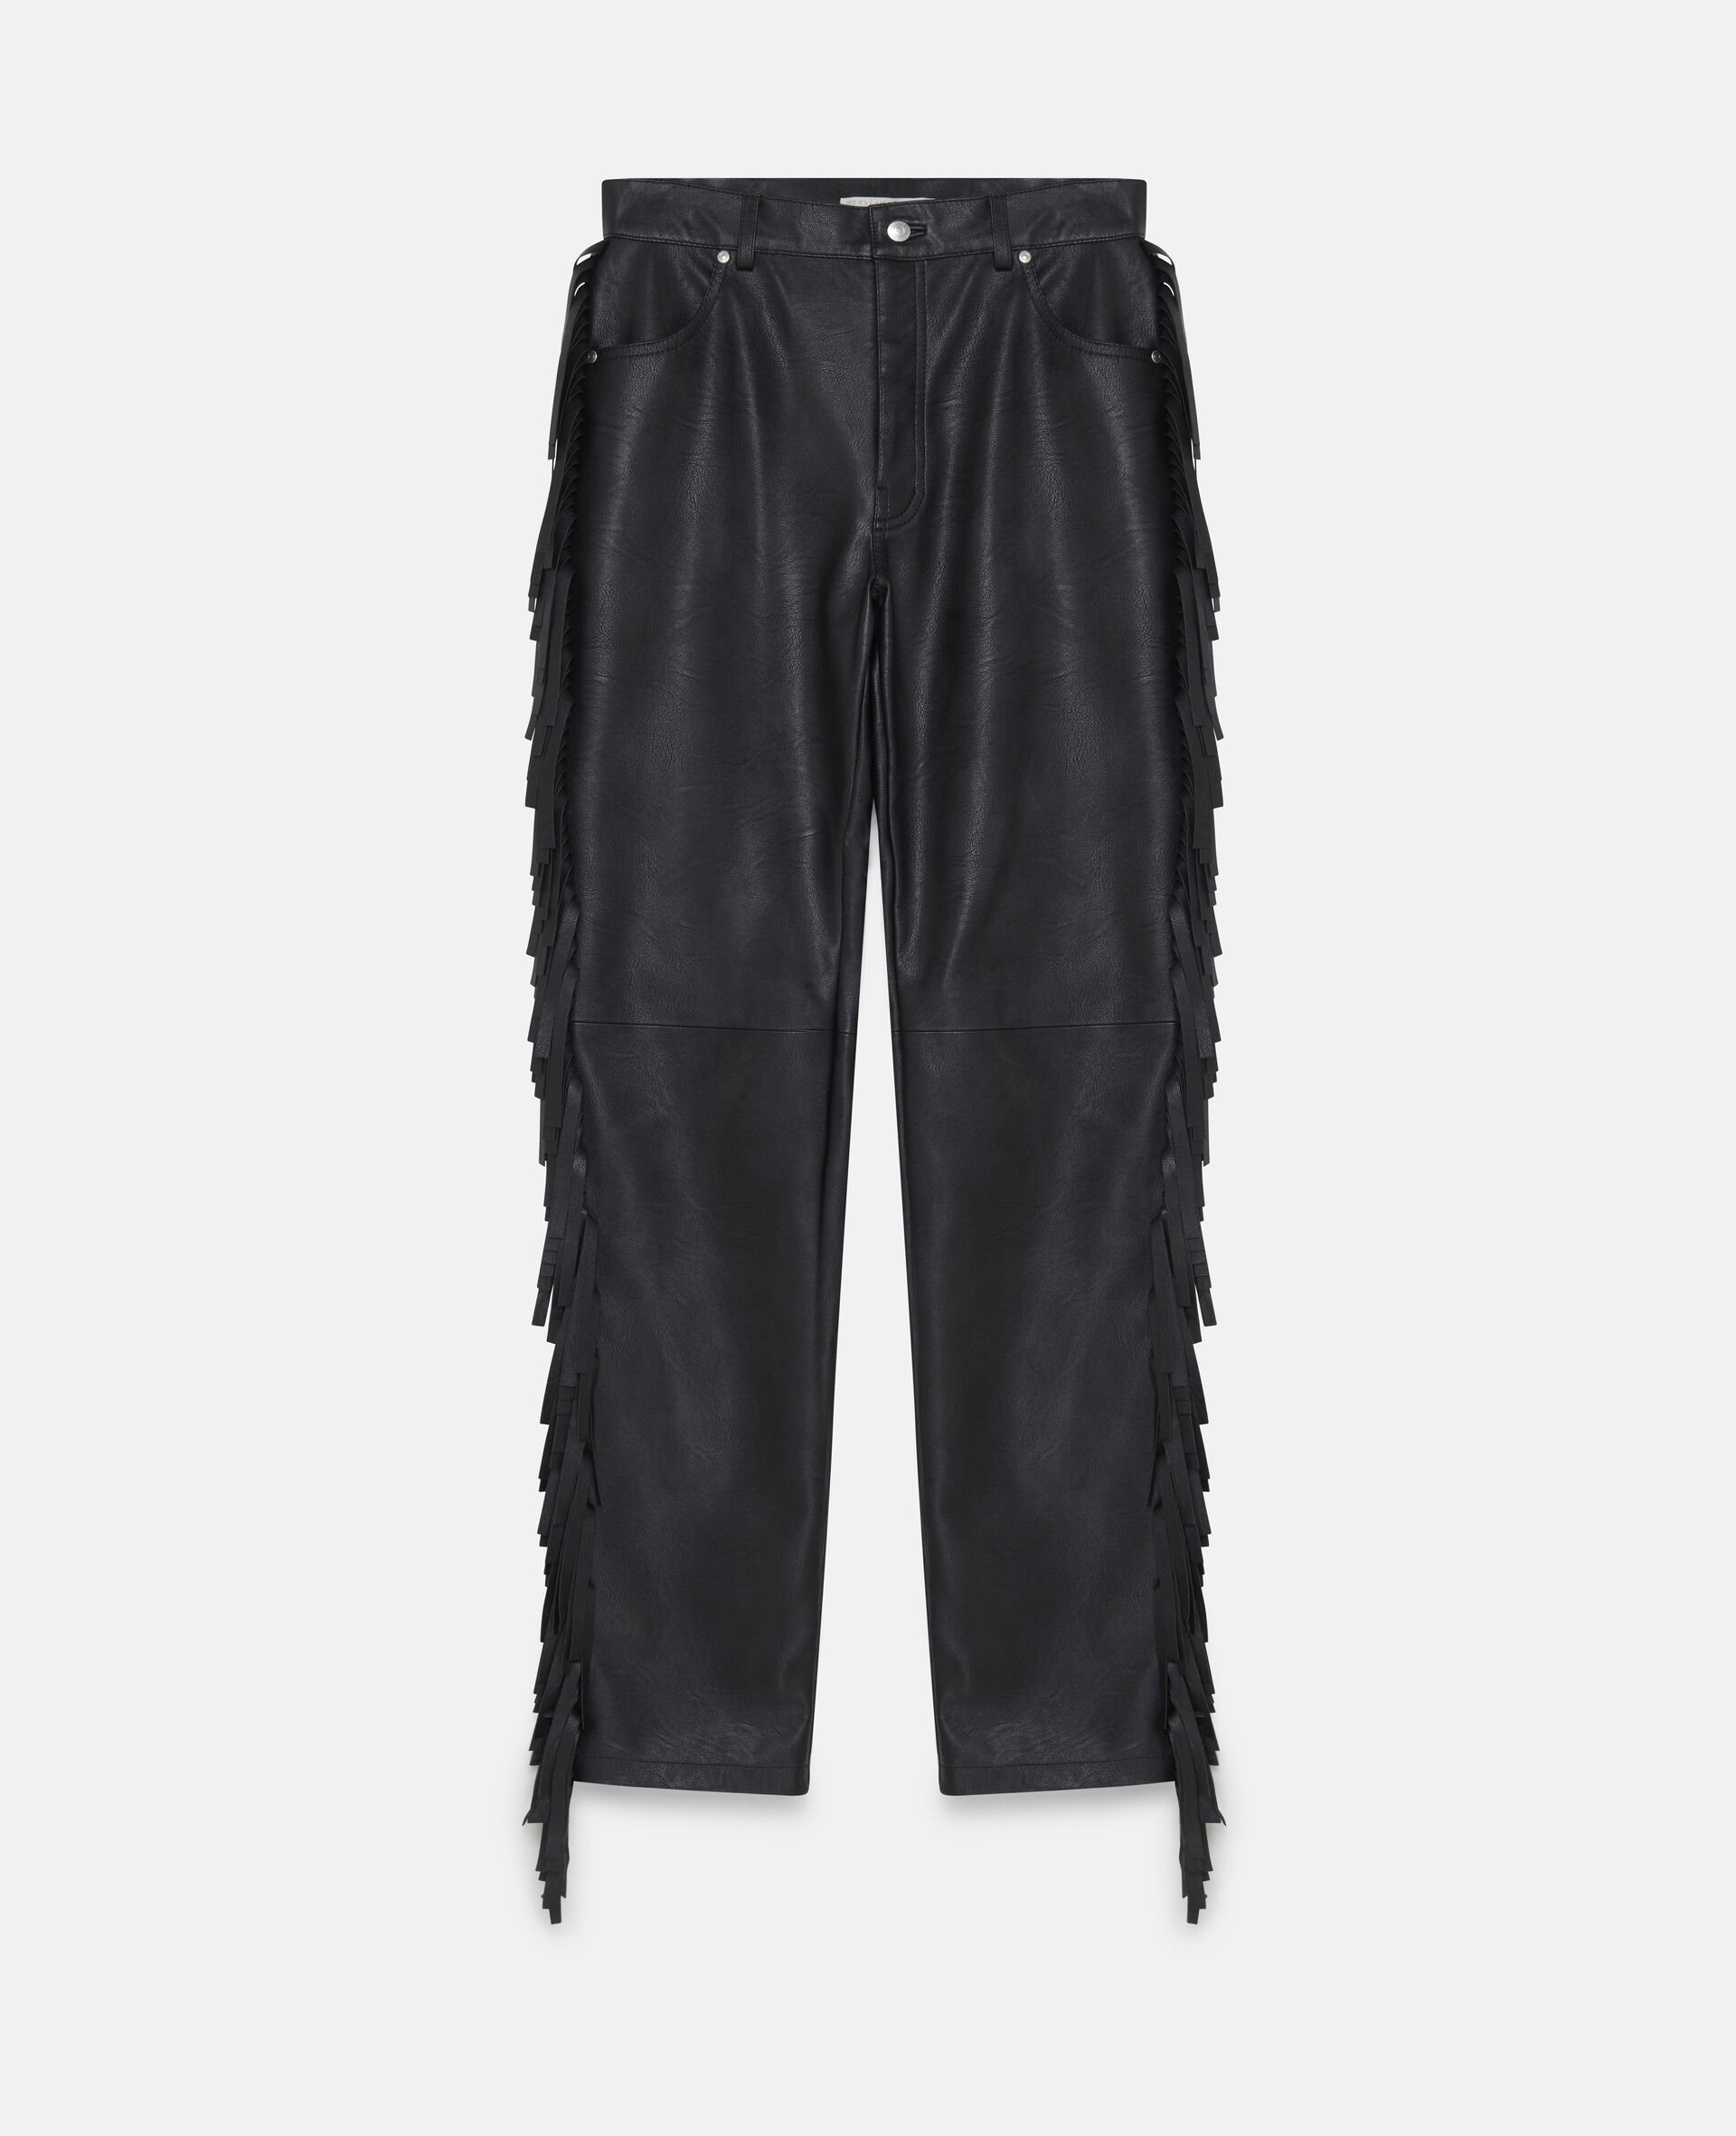 Fringe Alter Mat Trousers-Black-large image number 0